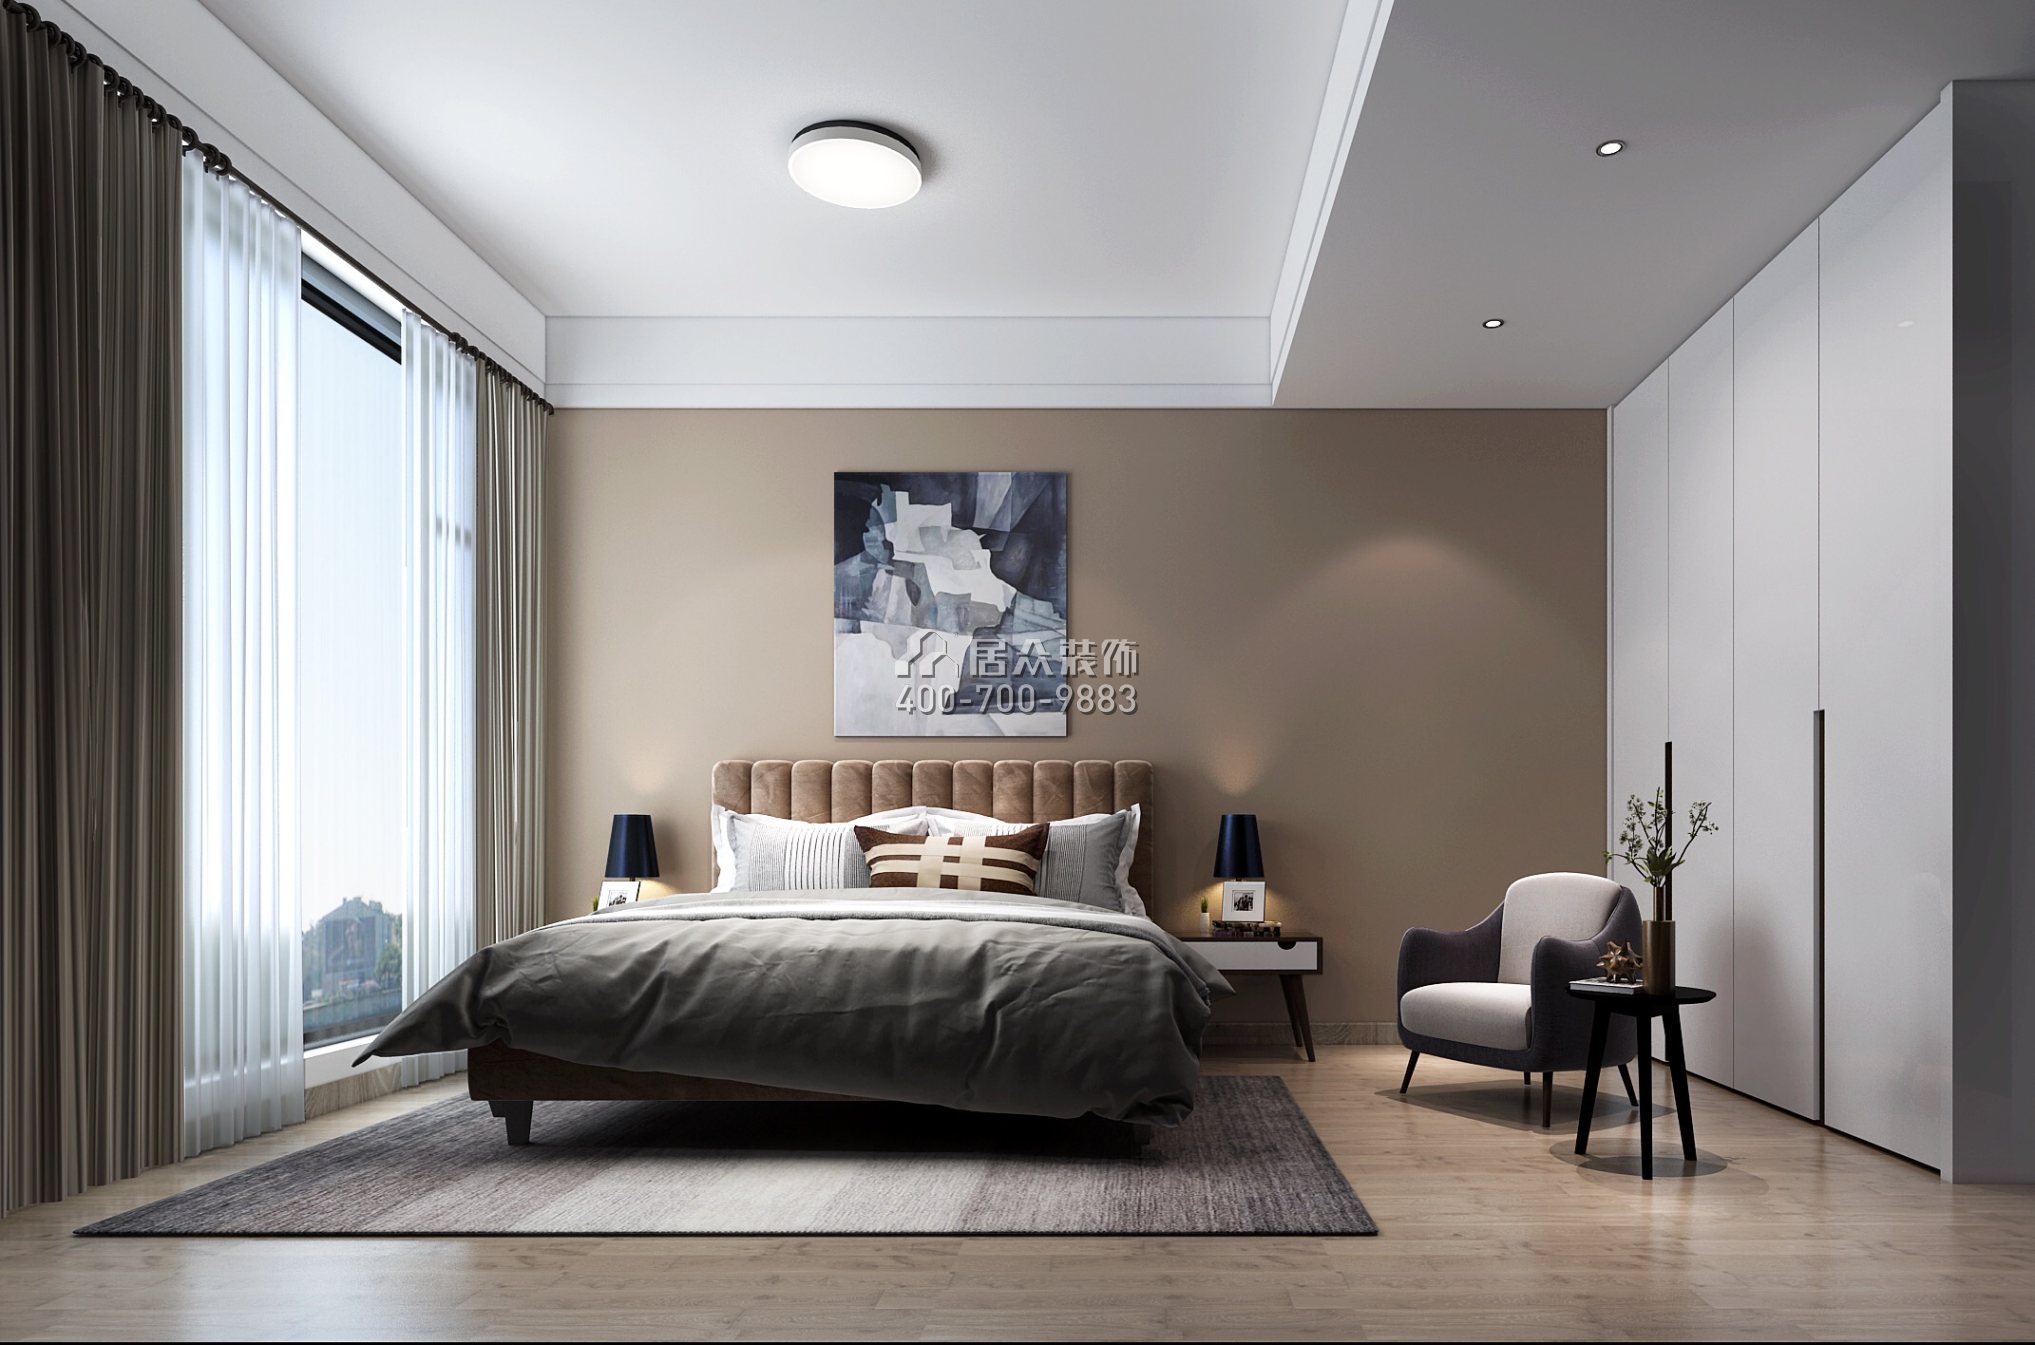 合景誉山国际168平方米北欧风格别墅户型卧室装修效果图